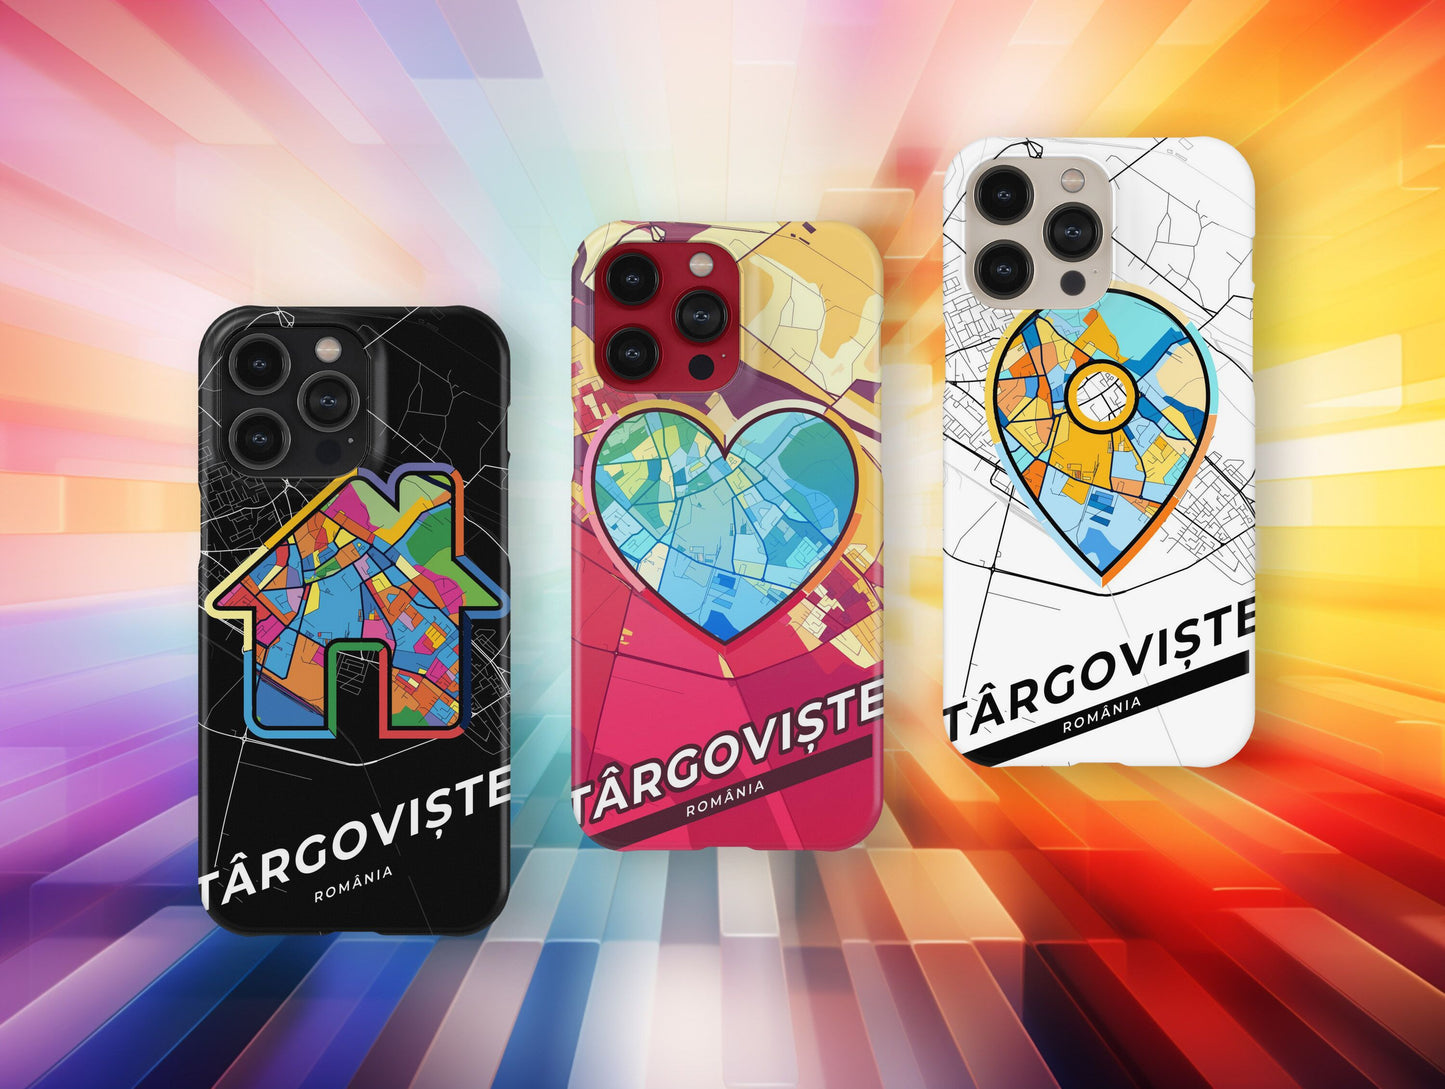 Târgoviște Romania slim phone case with colorful icon